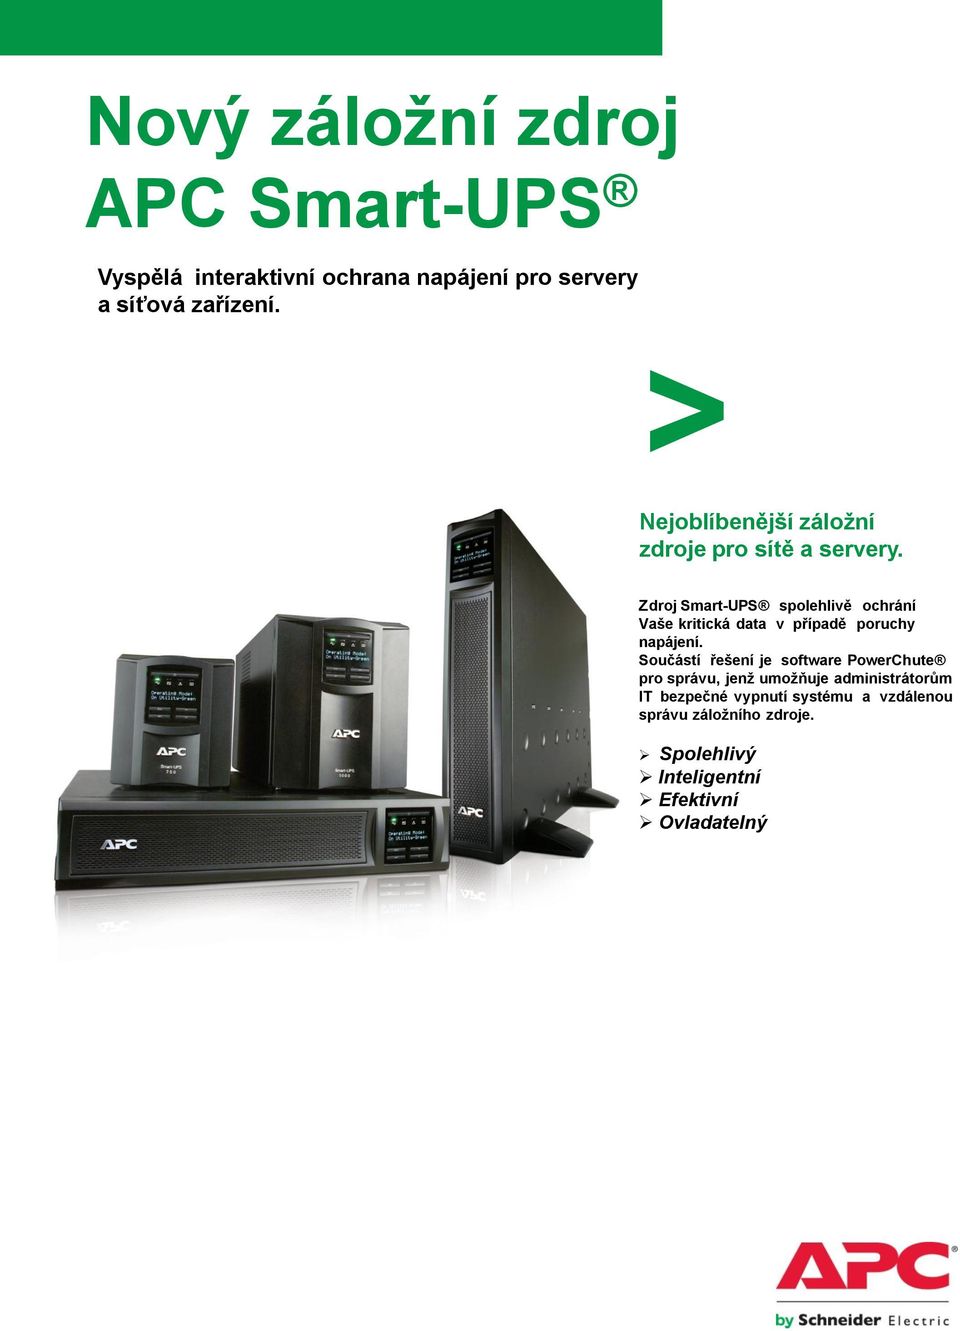 Zdroj Smart-UPS spolehlivě ochrání Vaše kritická data v případě poruchy napájení.